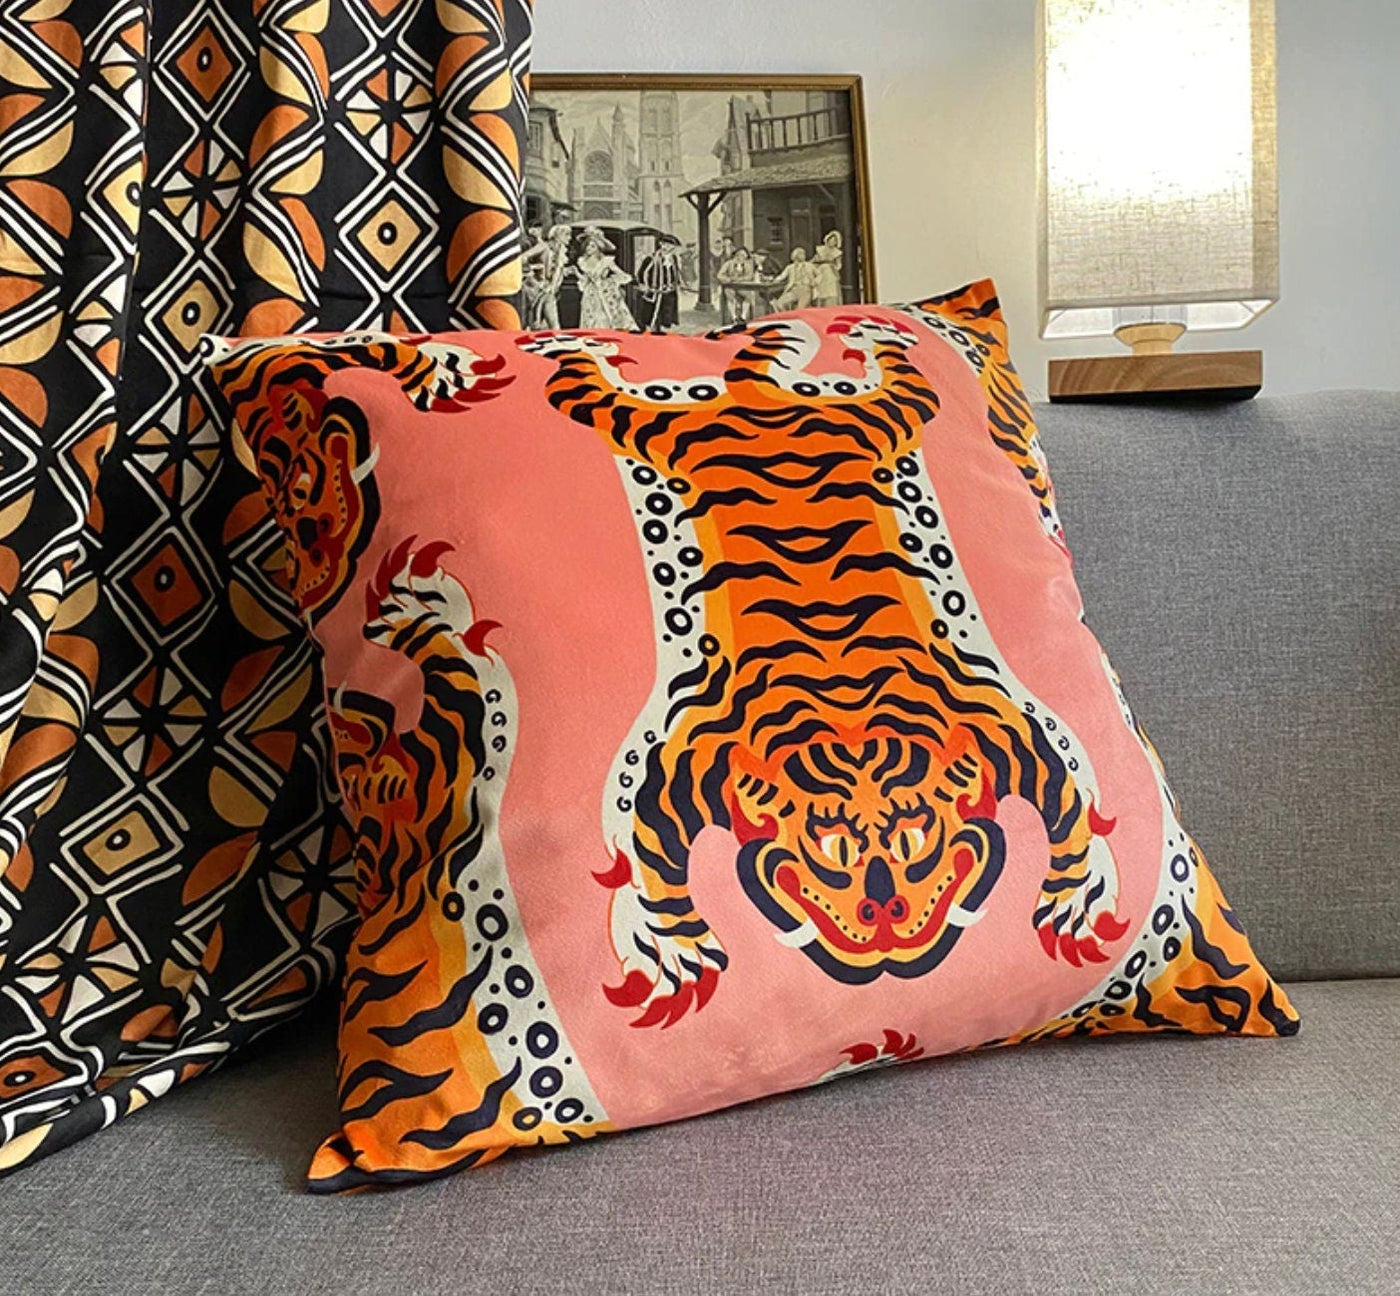 Luxury Double Sided Velvet Tibetan Tiger Vintage Retro Inspired Pillow Cover